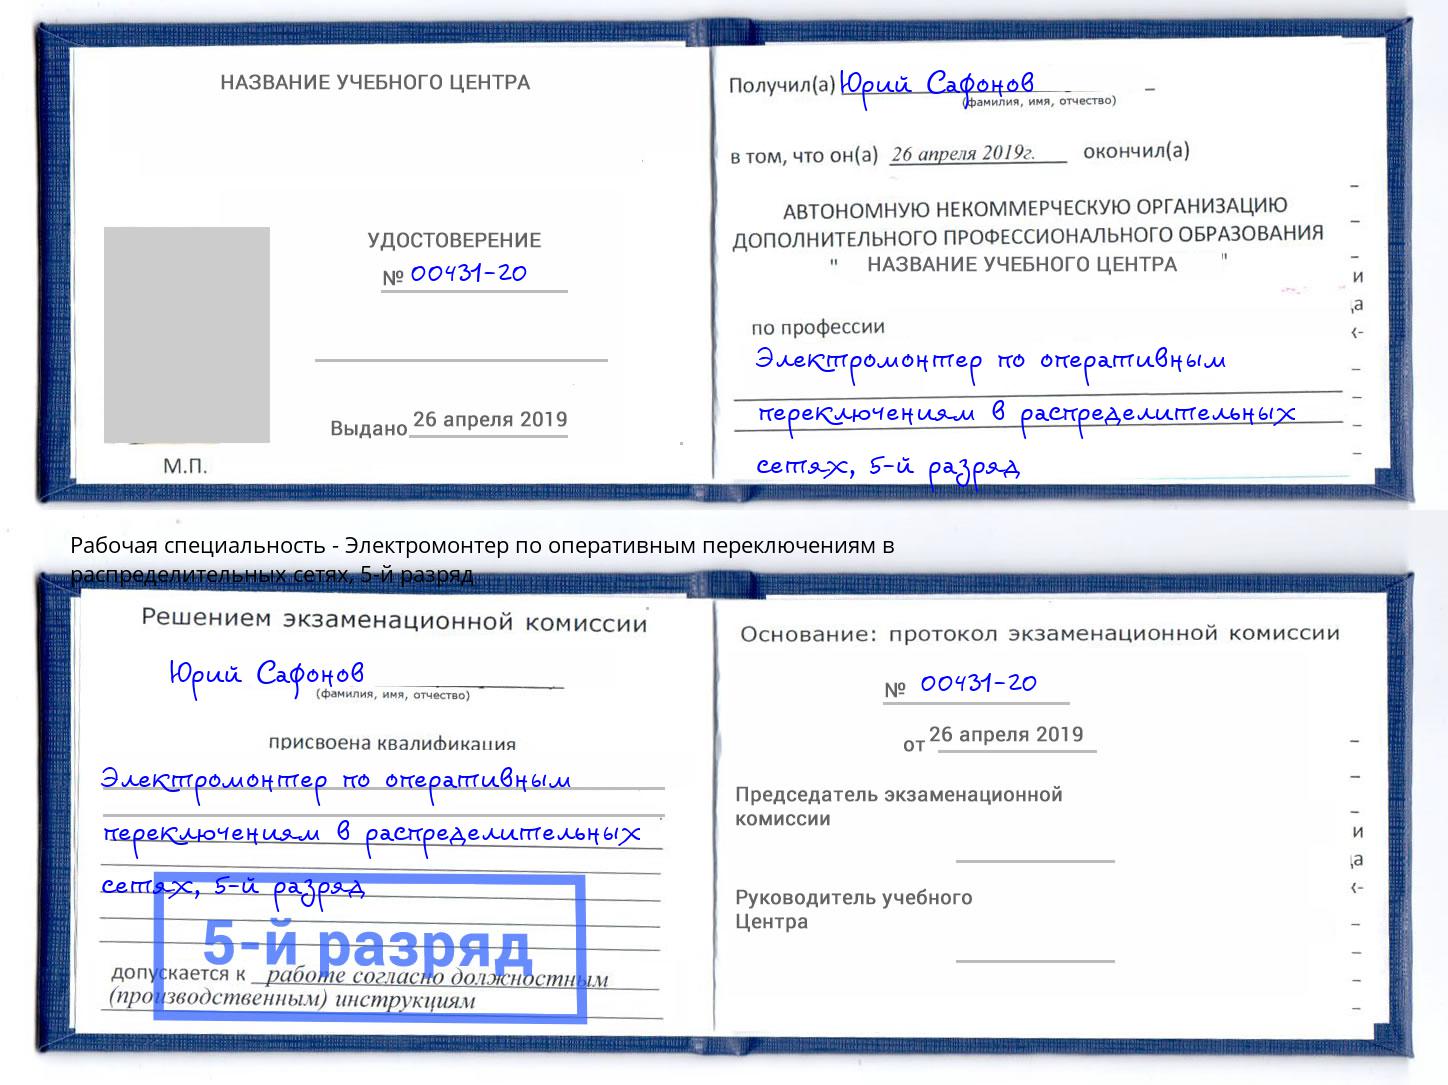 корочка 5-й разряд Электромонтер по оперативным переключениям в распределительных сетях Барнаул